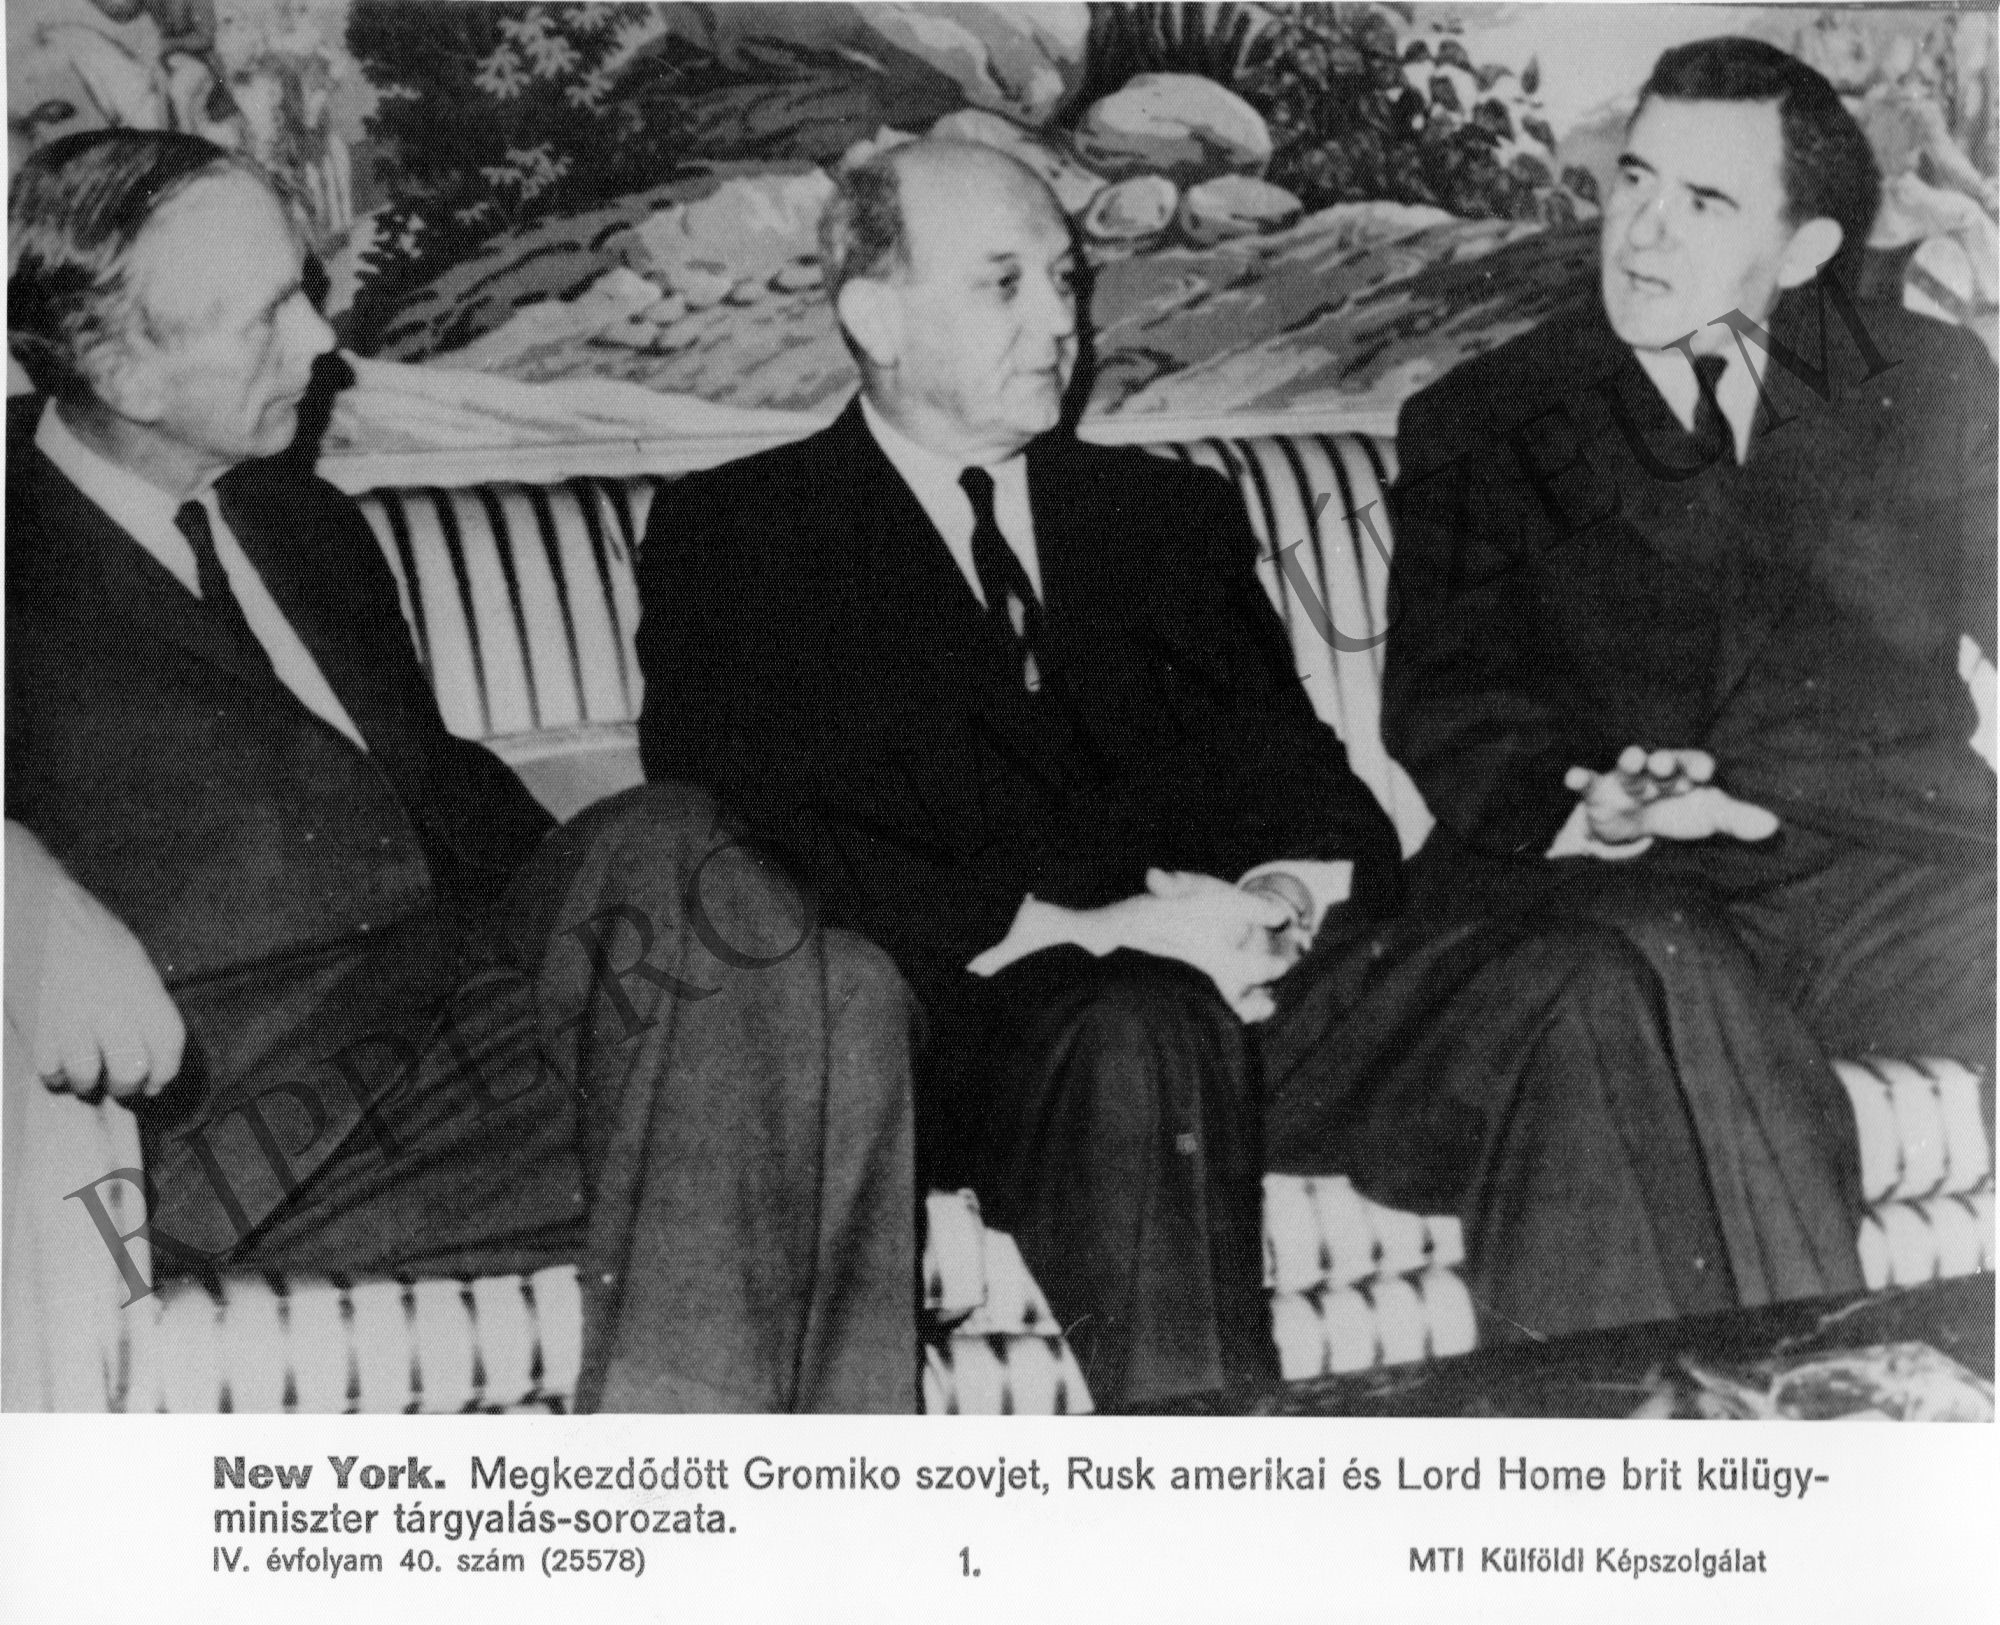 Megkezdődött Gromiko szovjet, Rusk amerikai és Lord Home brit külügyminiszter tárgyalássorozata. (Rippl-Rónai Múzeum CC BY-NC-SA)